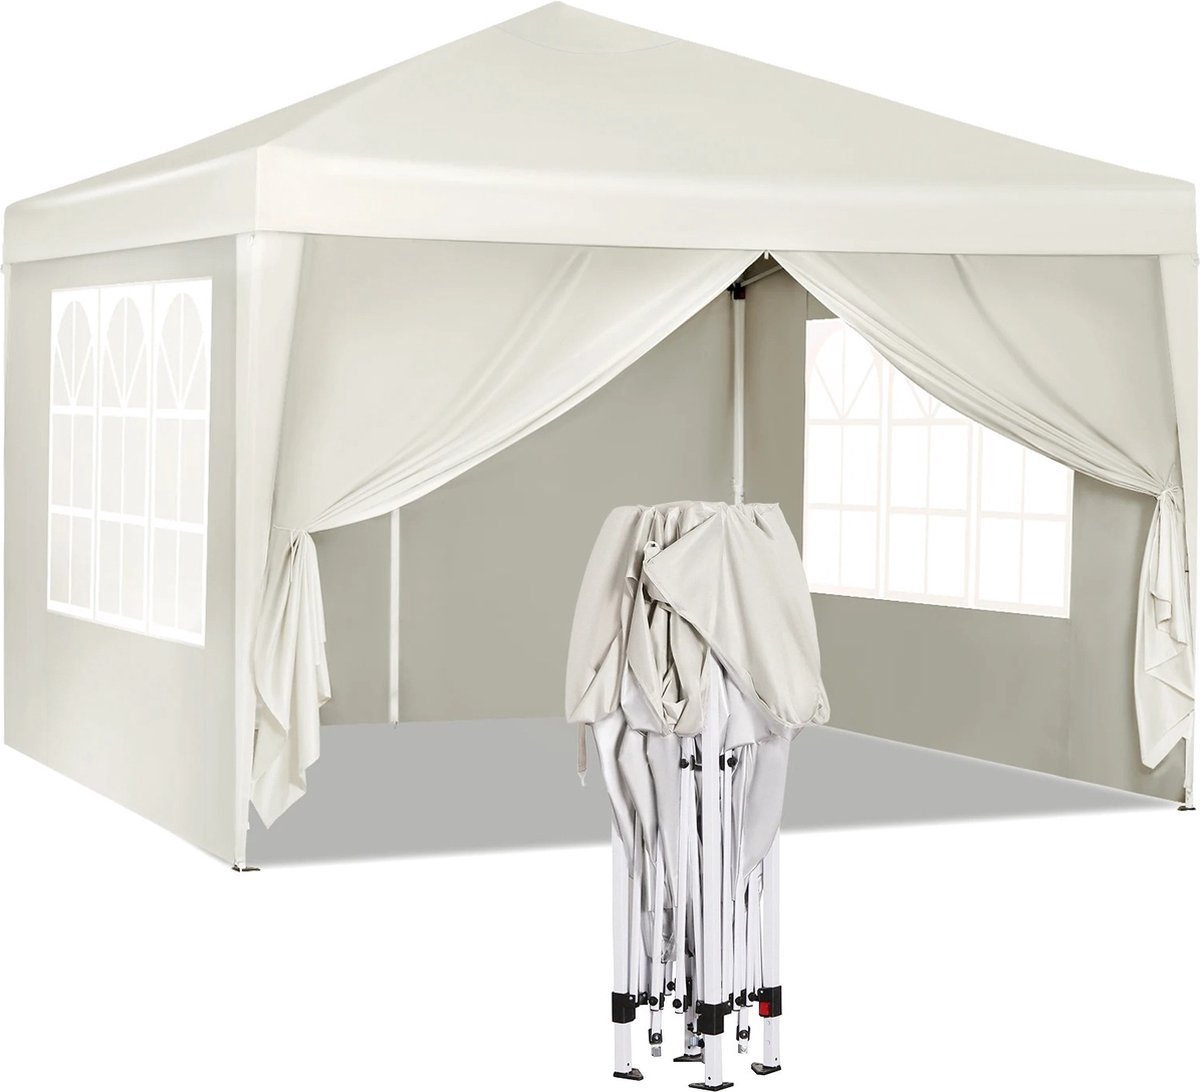 B.O.S. Waterdichte Partytent 3x3 meter opvouwbaar - Paviljoen met zijpanelen - Easy up - Beige - Pop-up Tent met haringen, touw en anti slip poten